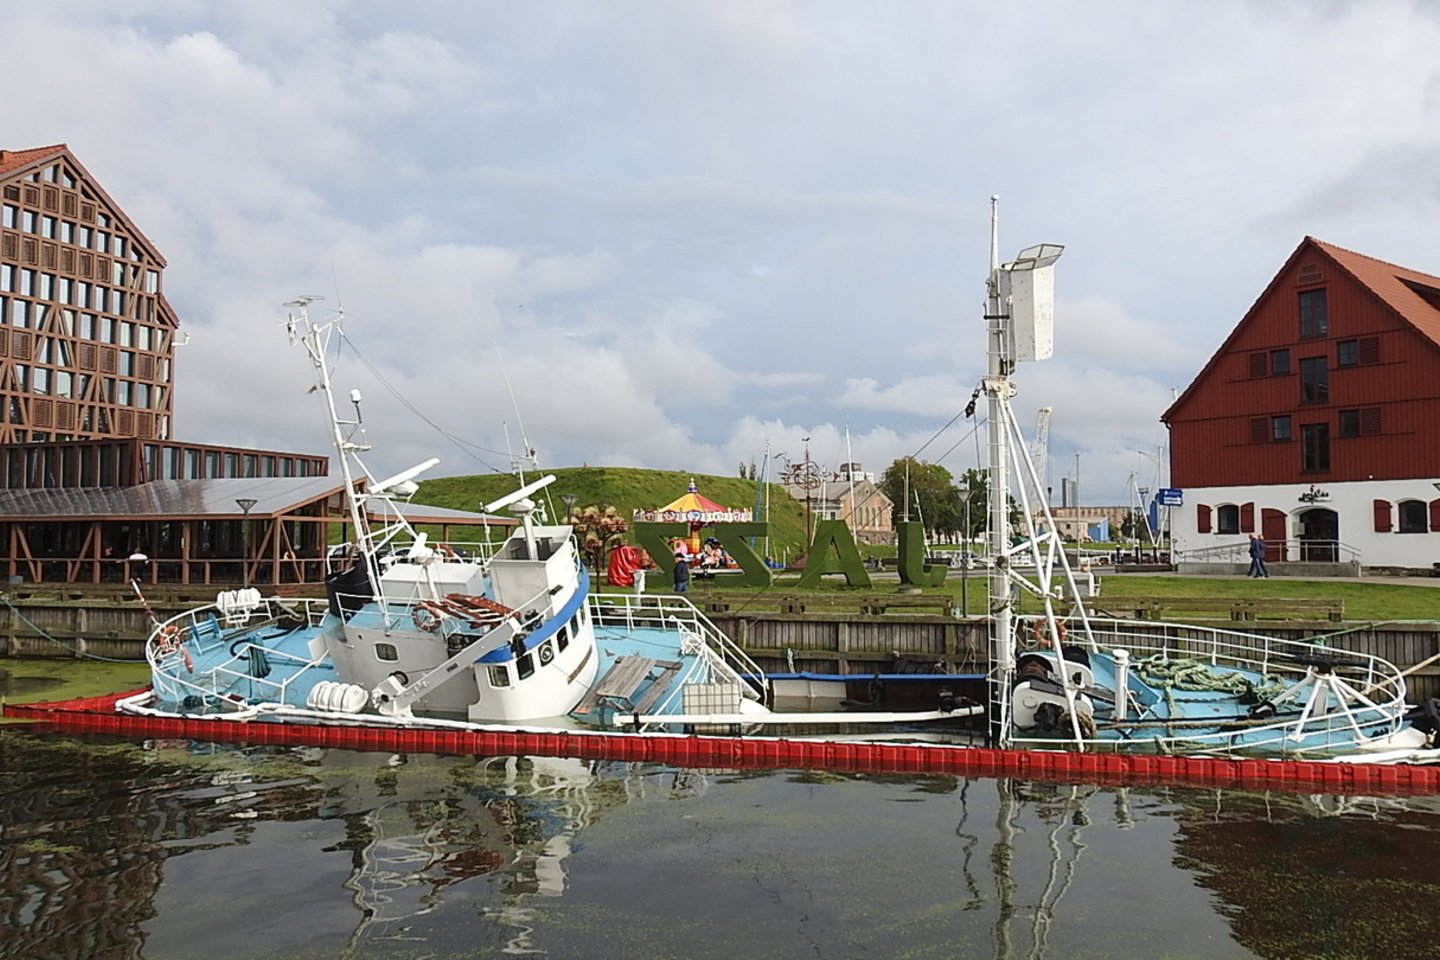 Senam banginių medžioklės laivui "Ole Willassen" nesiseka - Danės upėje nuskendo jau trečią kartą. <br> G.Pilaičio nuotr.